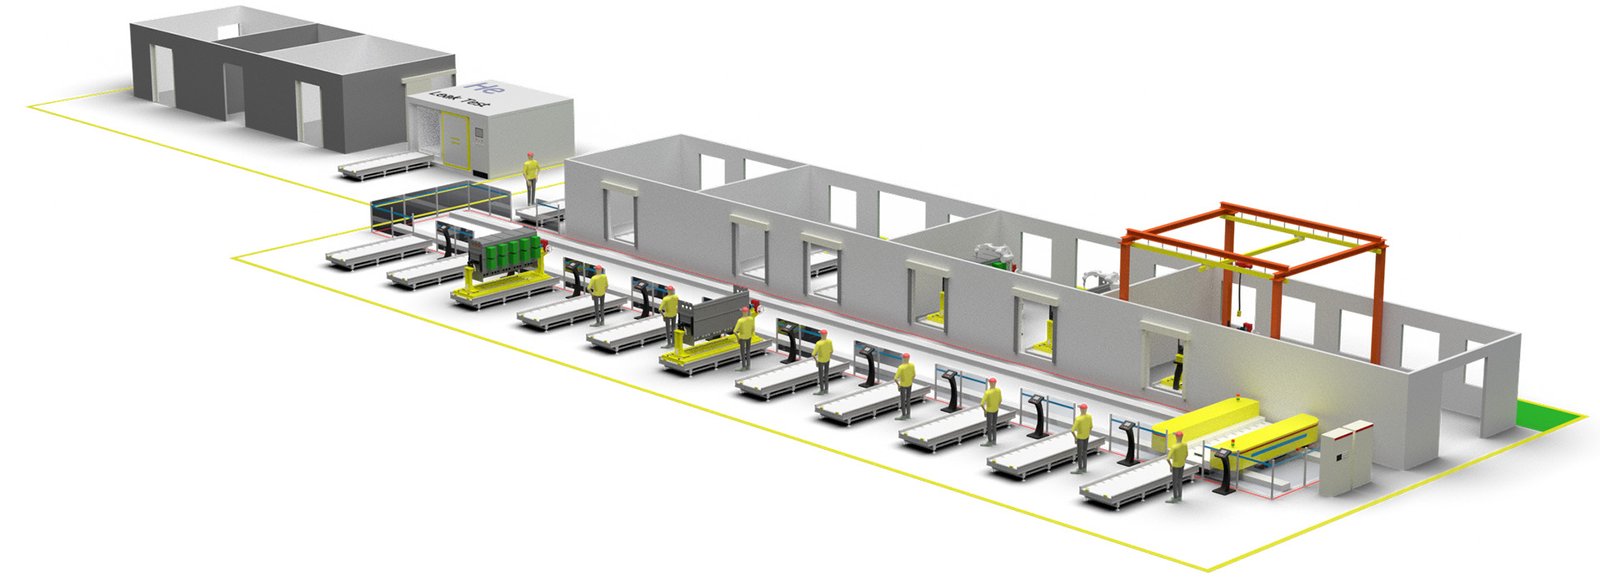 RMU Assembly line layout